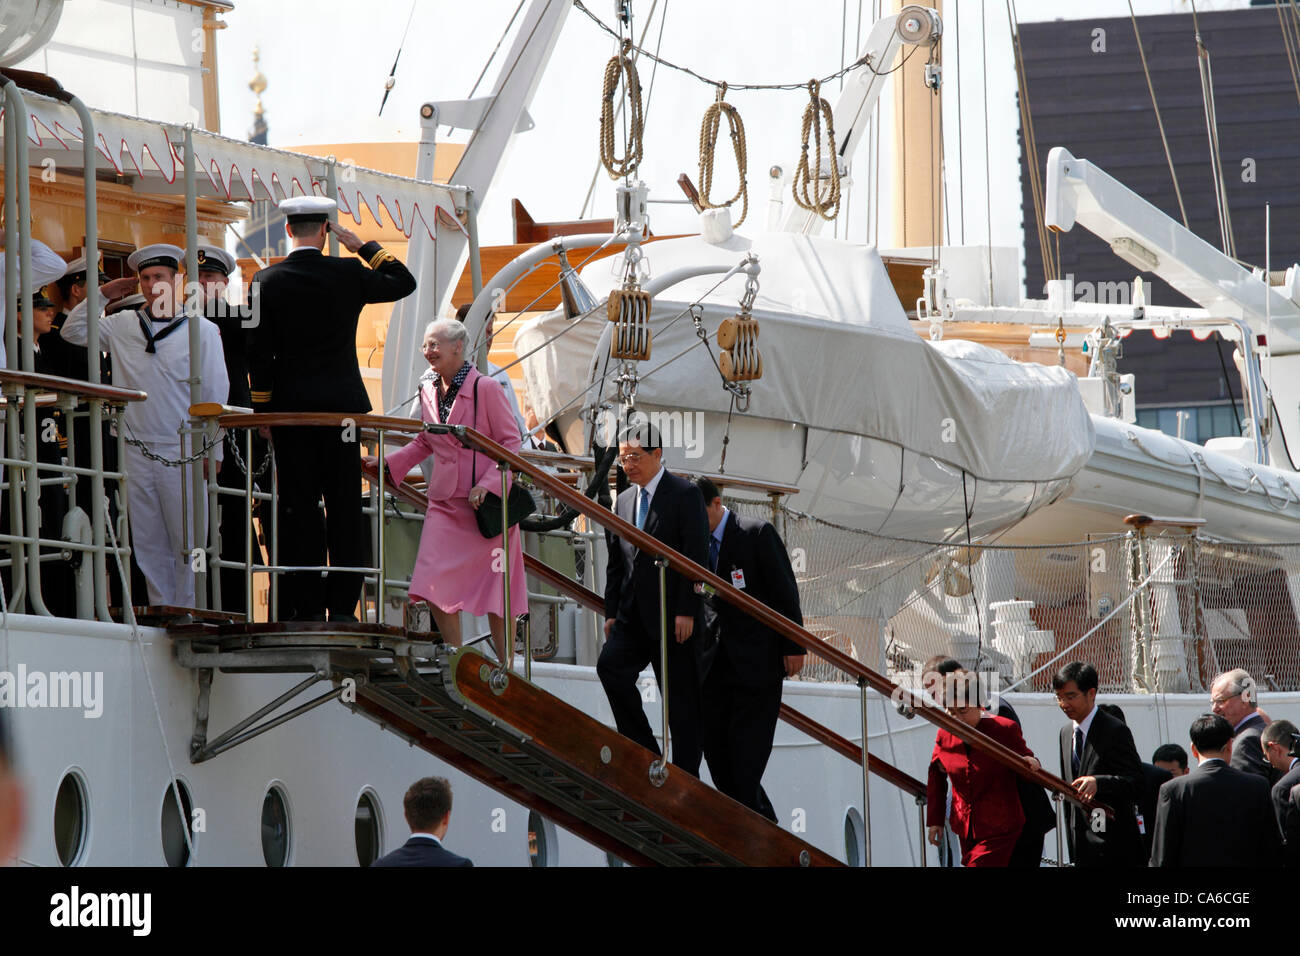 Giugno venerdì 15, 2012 - La Regina Margrethe II di Danimarca e il presidente cinese Hu Jintao e sua moglie di salire a bordo del Royal Danish yacht HDMY Dannebrog a Amaliehaven vicino al Palazzo Amalienborg nel porto di Copenaghen per una breve crociera guidata nel porto in visita ufficiale in Danimarca. Foto Stock